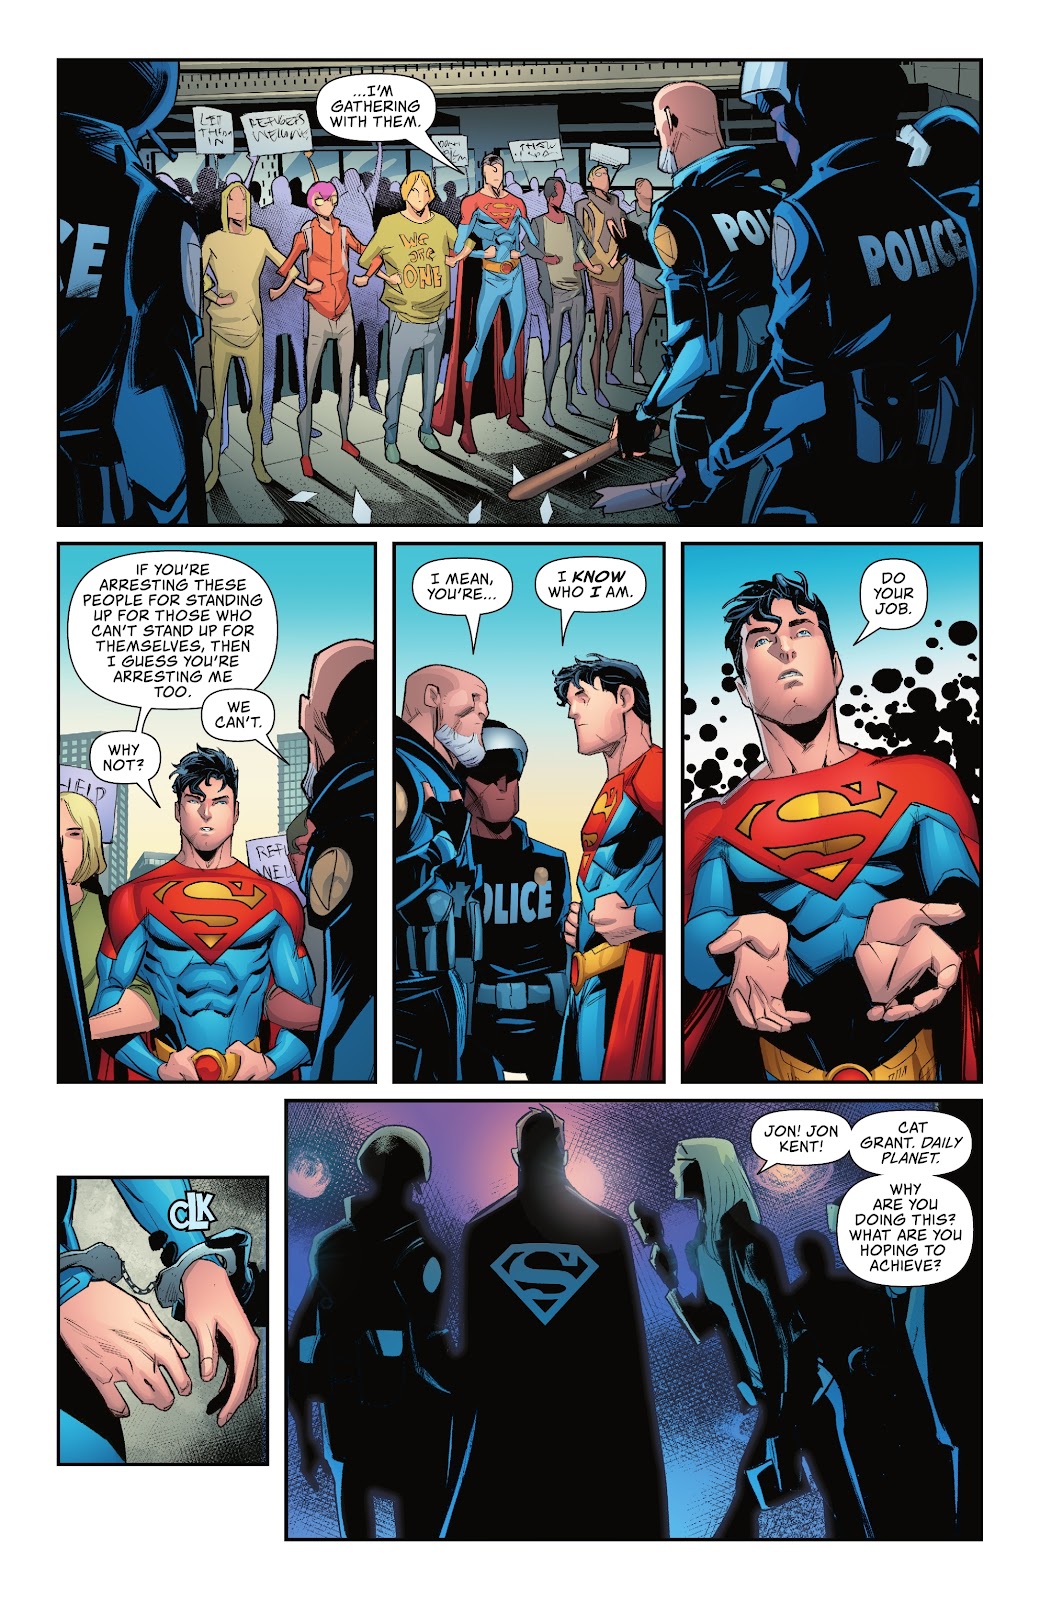 Superman Gets Arrested For Protesting 